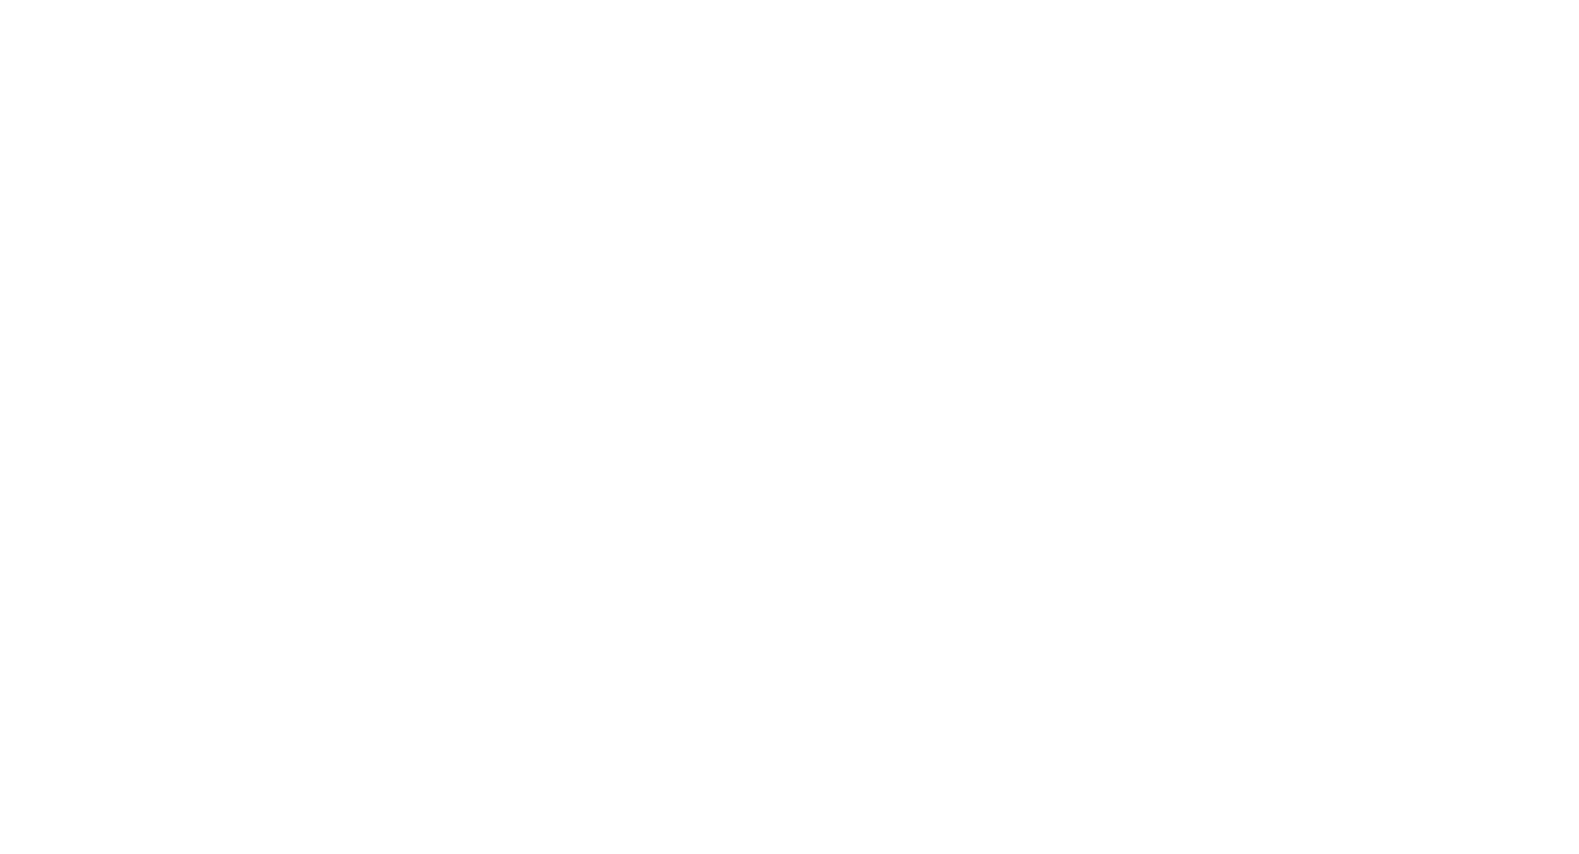 SSP Group logo grand pour les fonds sombres (PNG transparent)